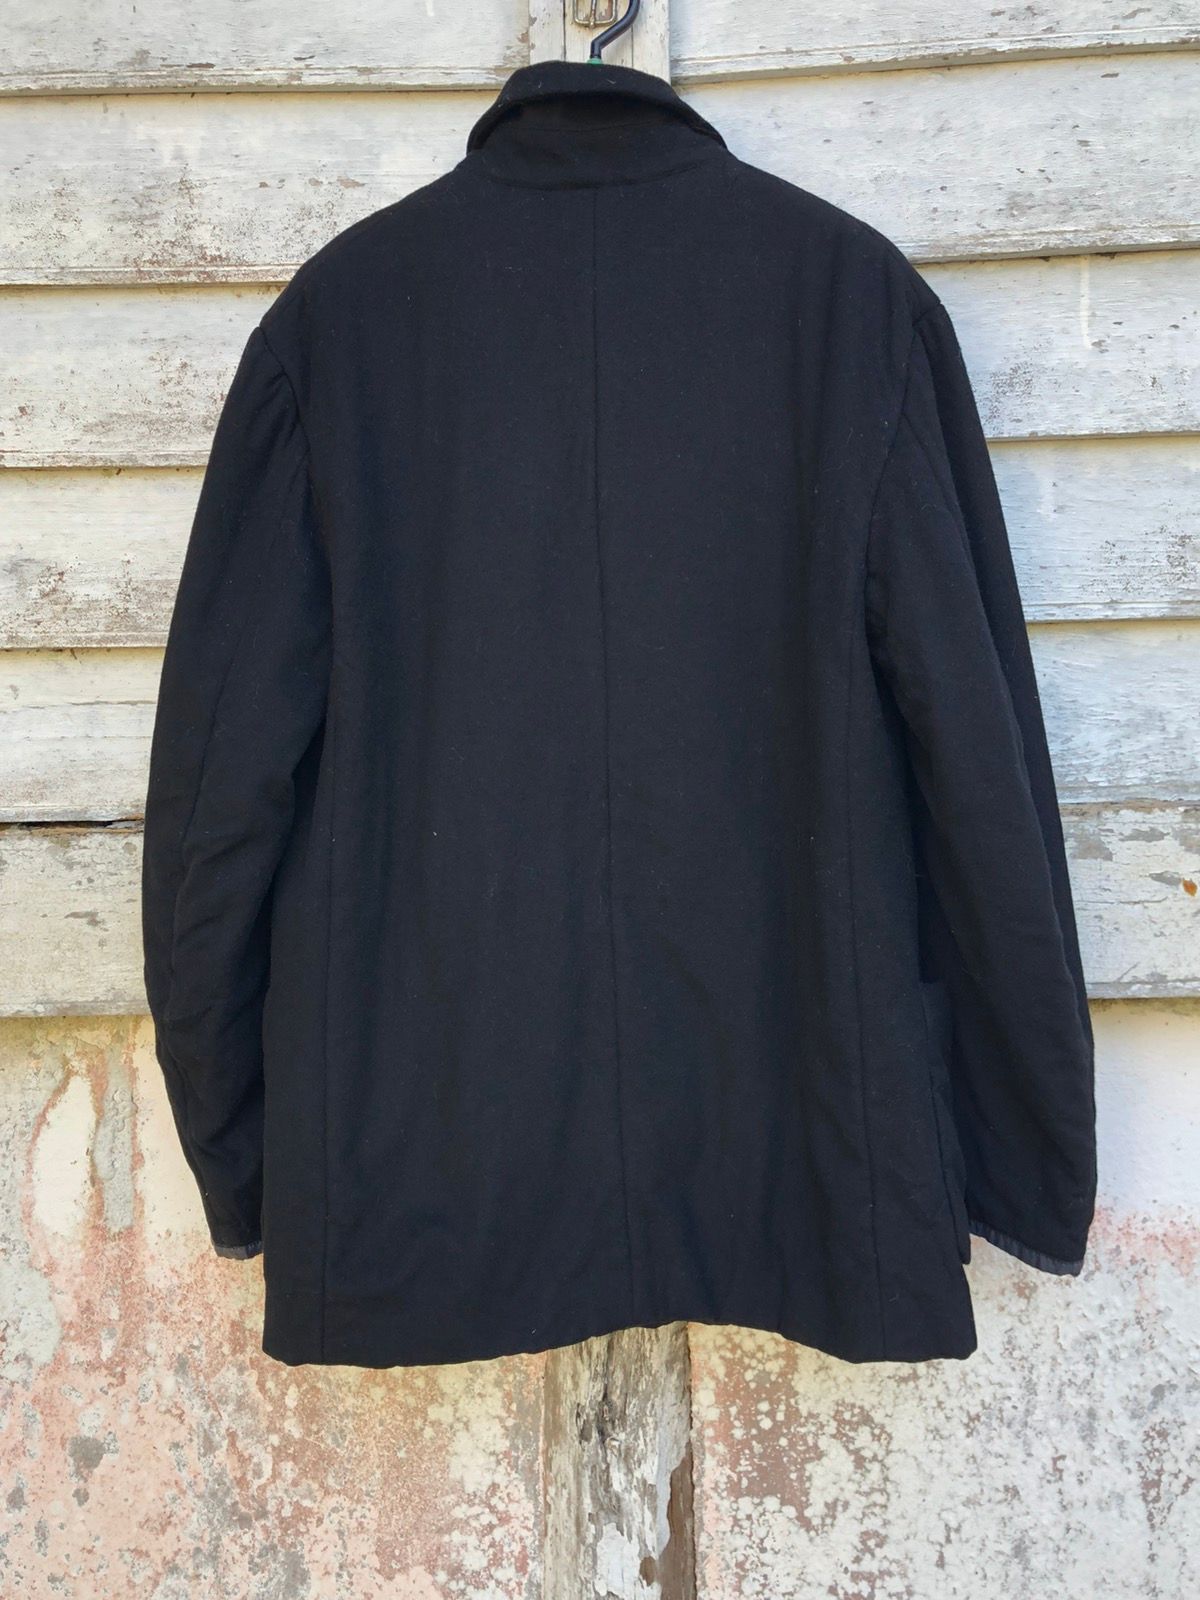 Dries Van Noten 2 Pockets Wool Cashmere Coat Jacket - 4